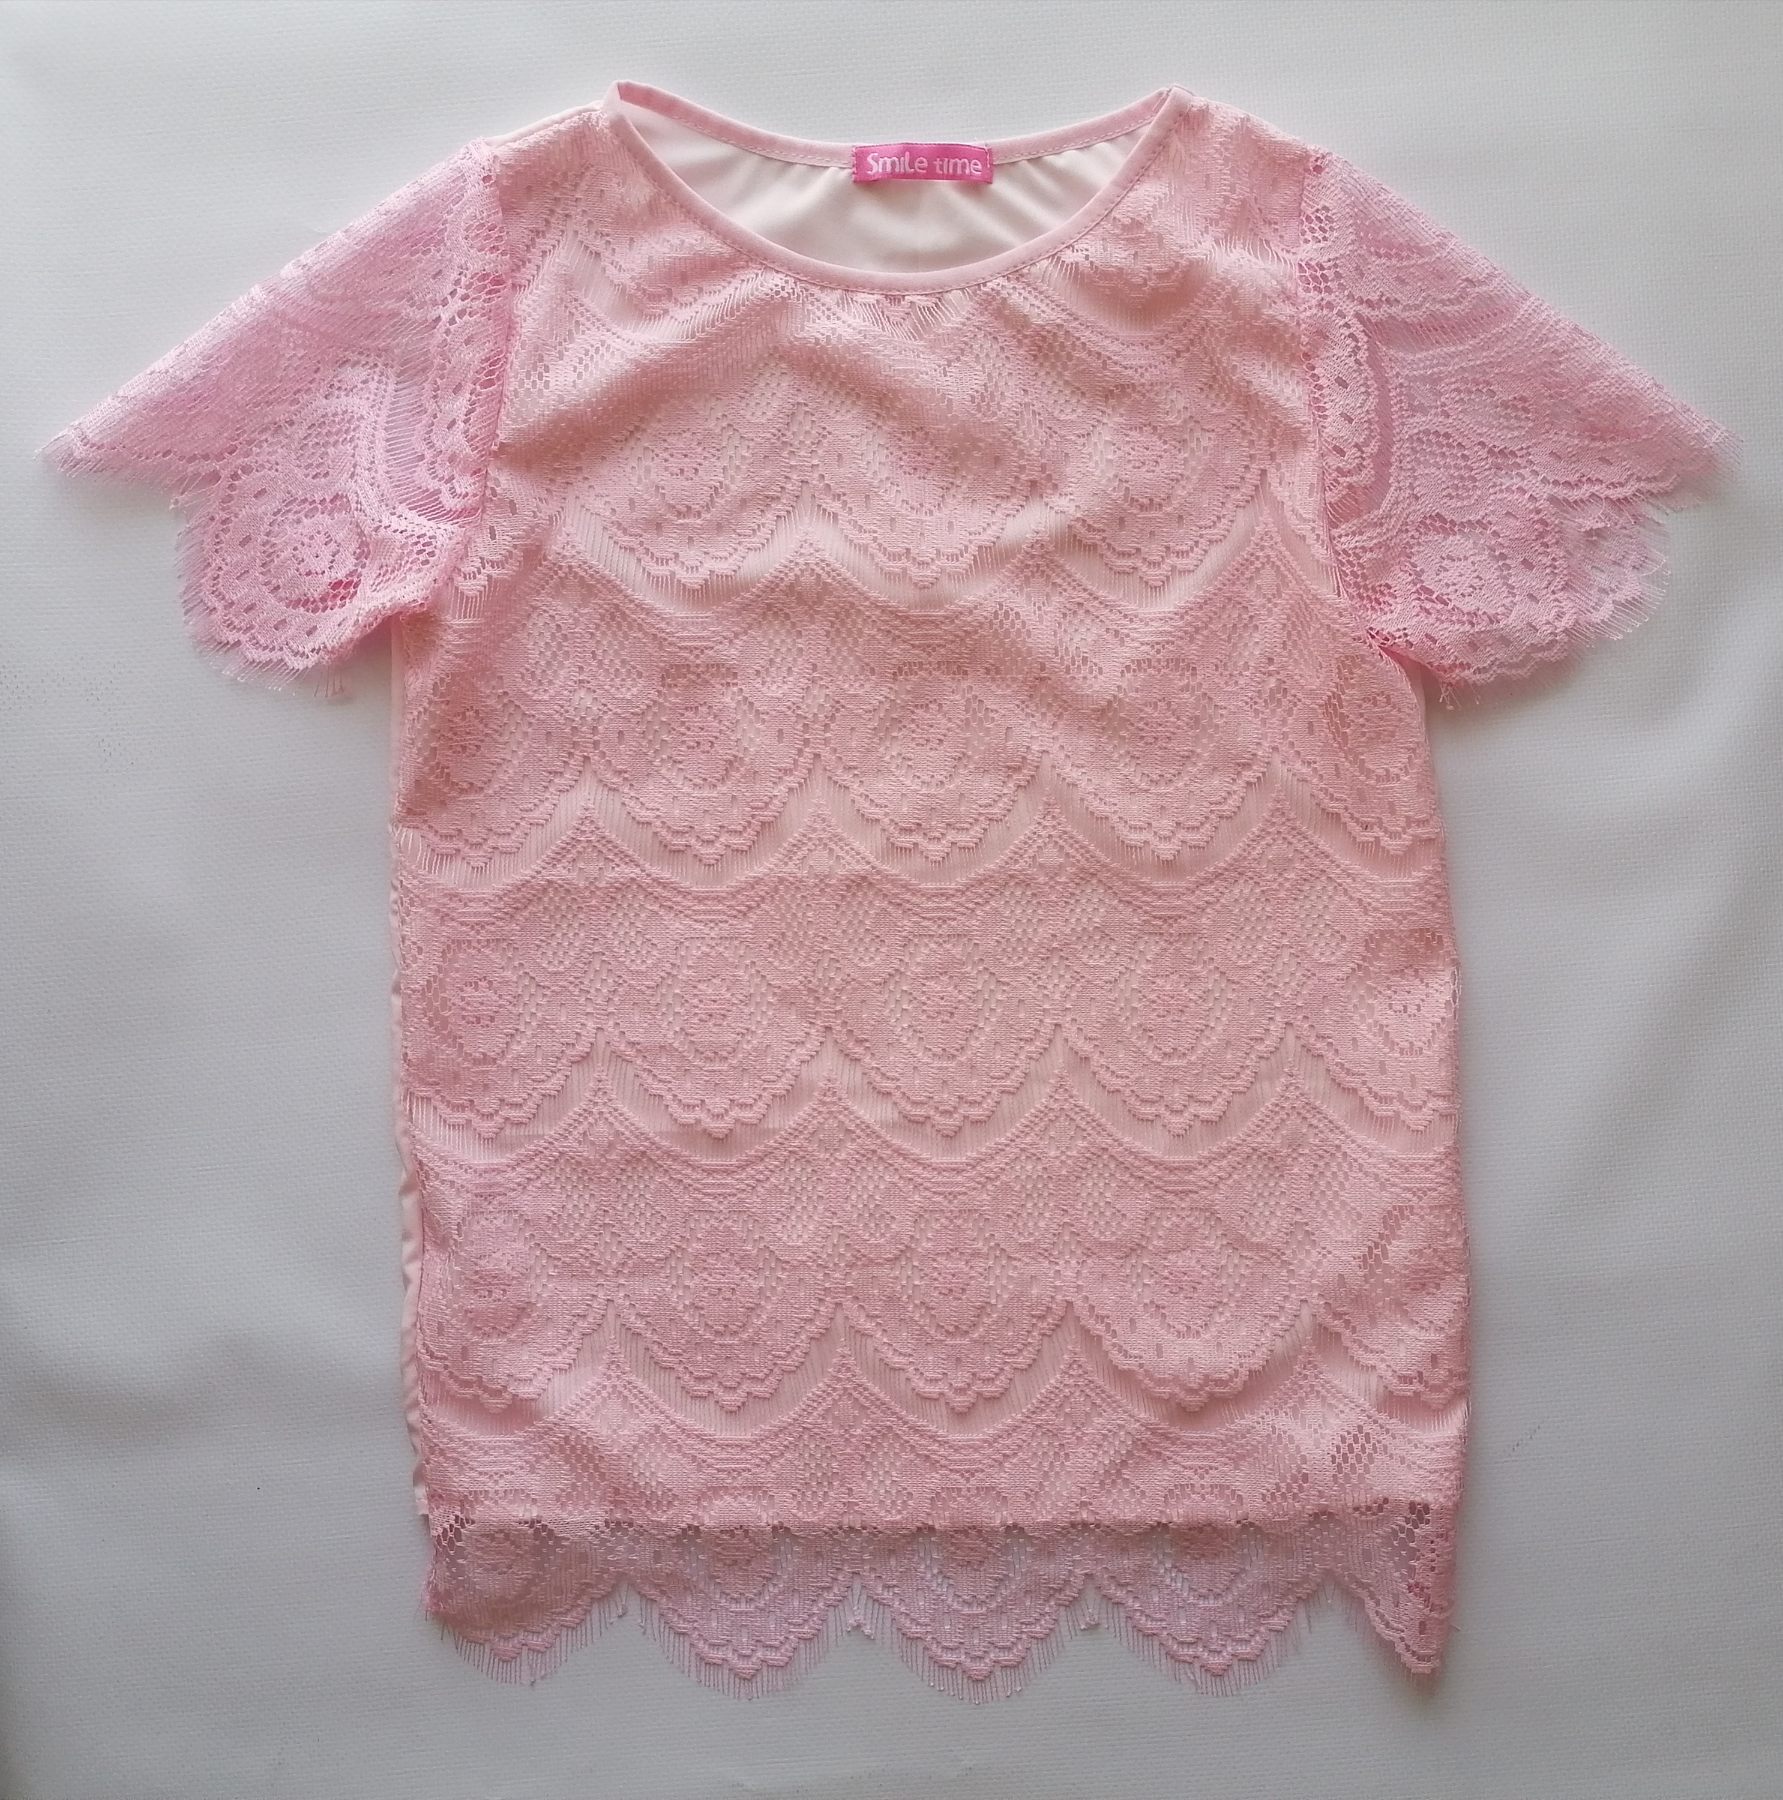 Блузка для дівчинки, короткий рукав, мереживна, рожеваEva SmileTime